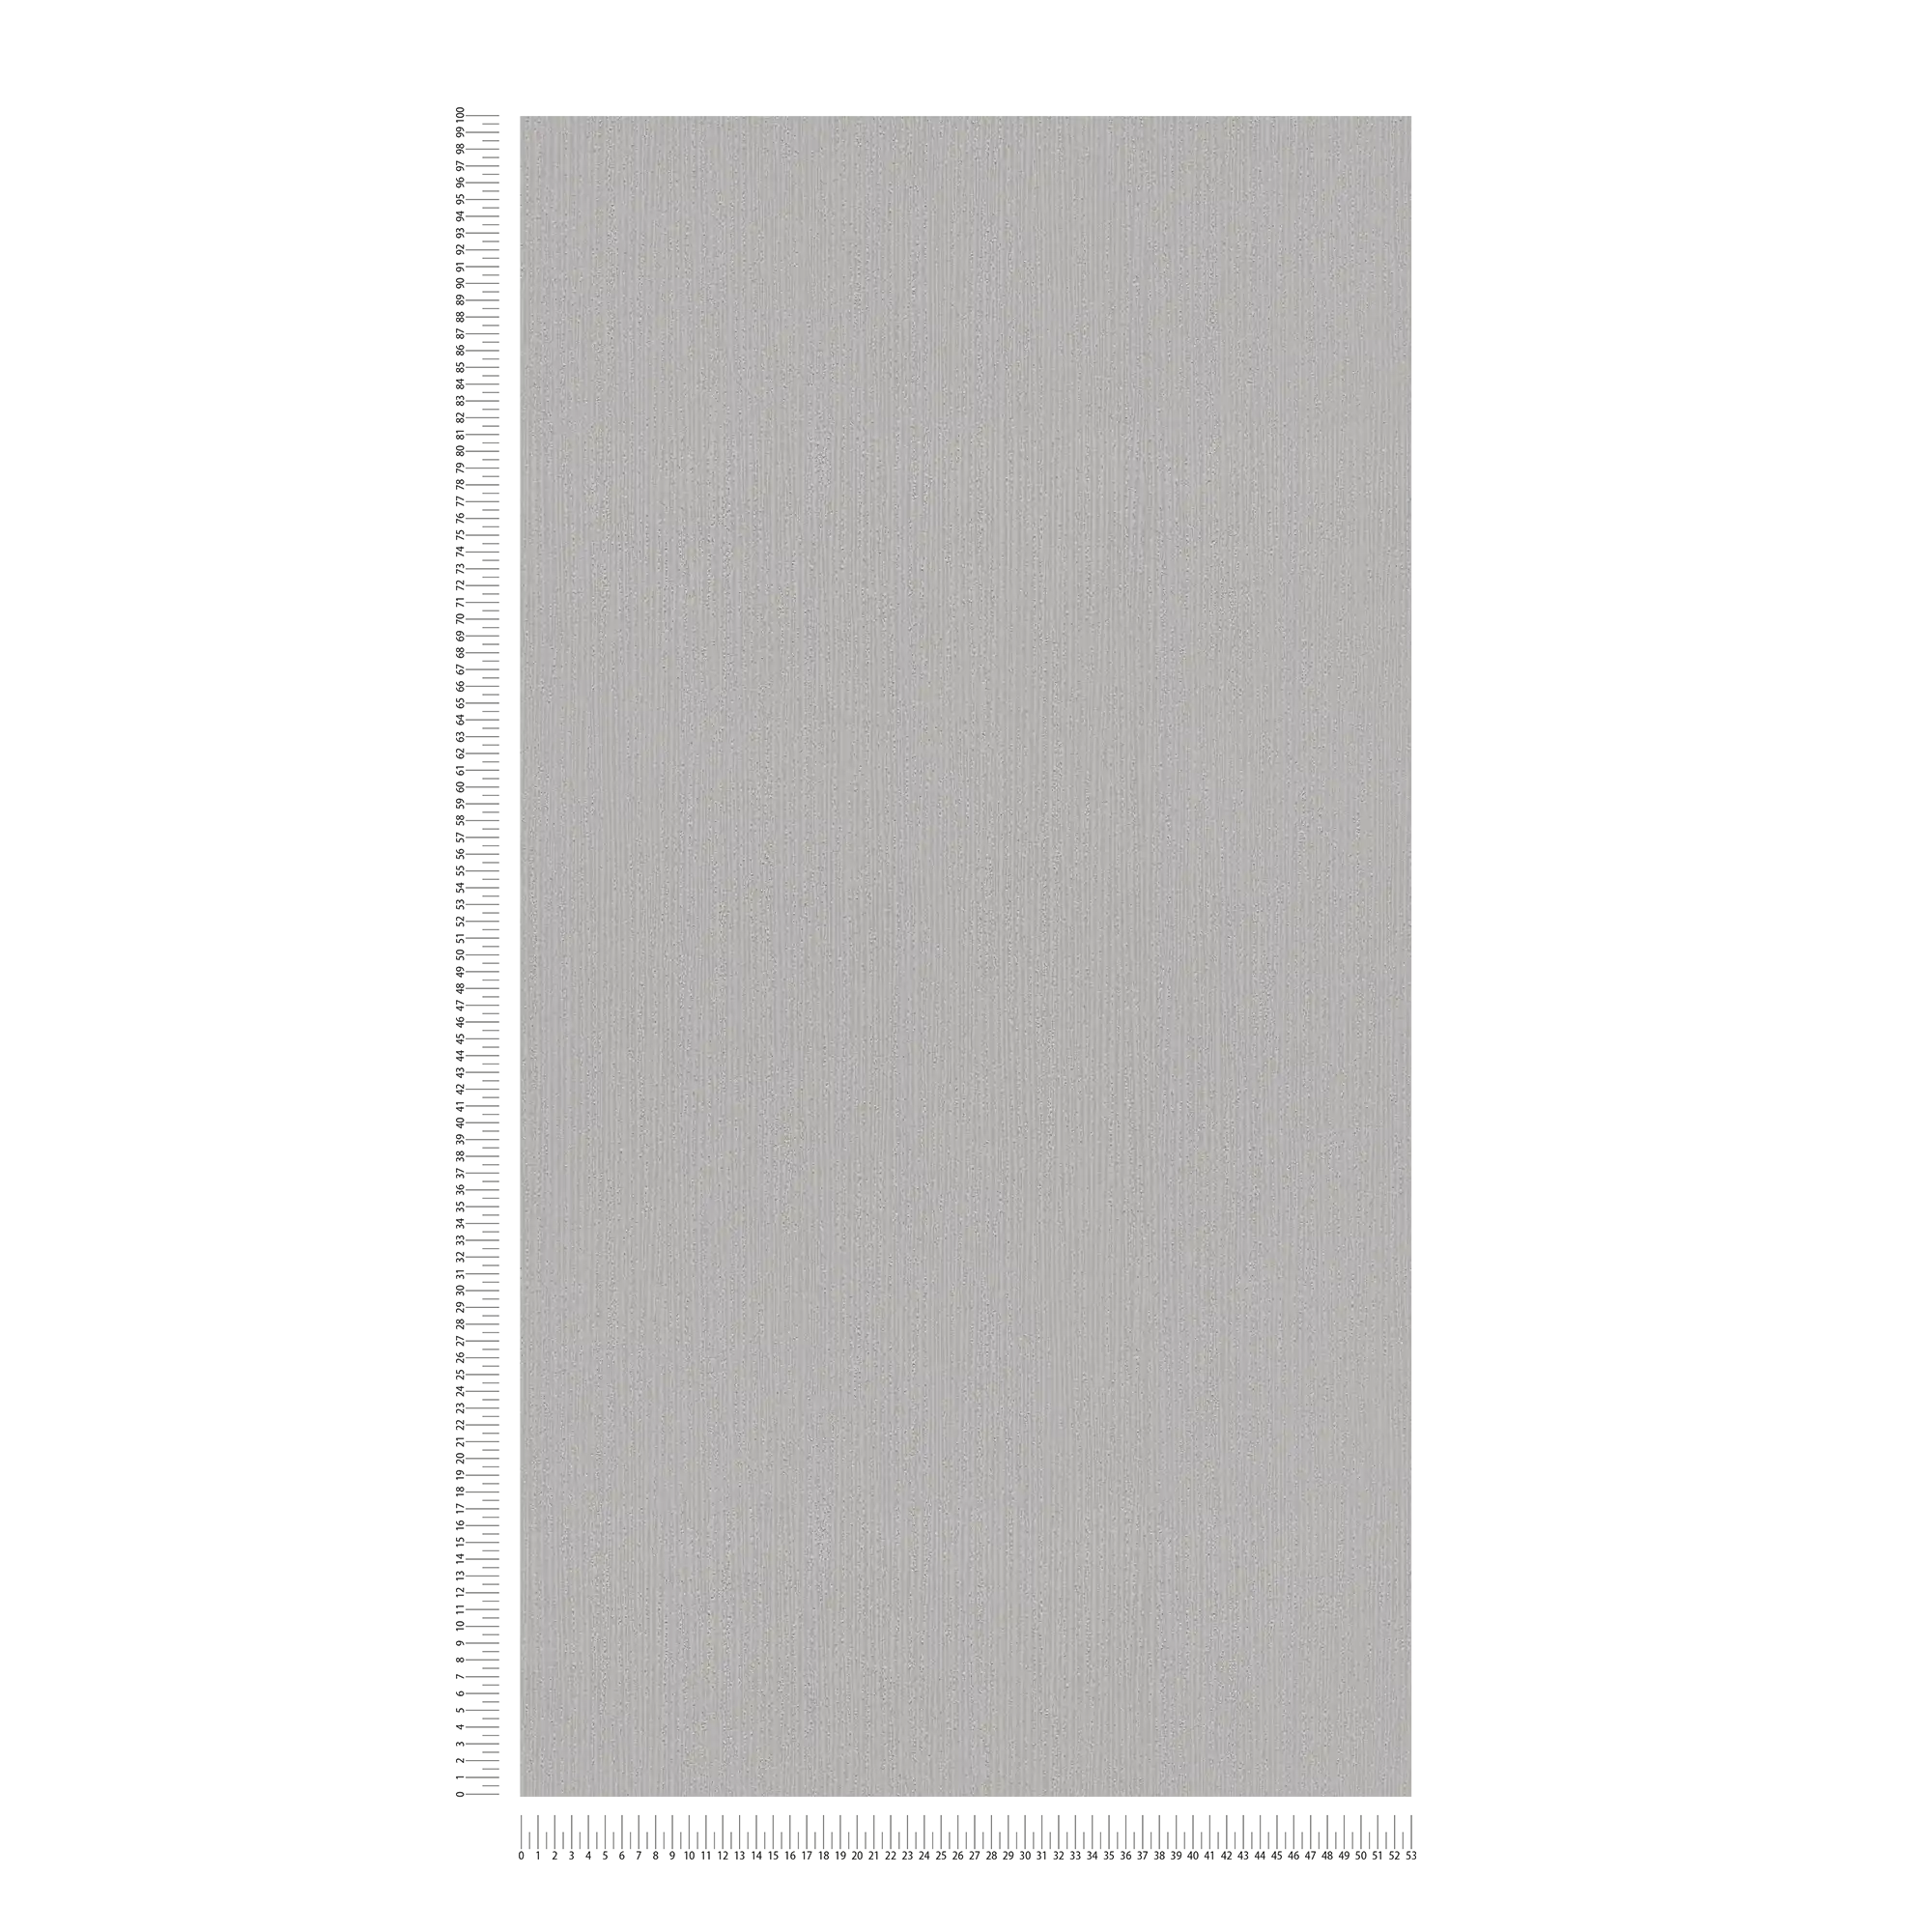             papier peint structuré gris clair avec motif texturé ton sur ton, gris satiné
        